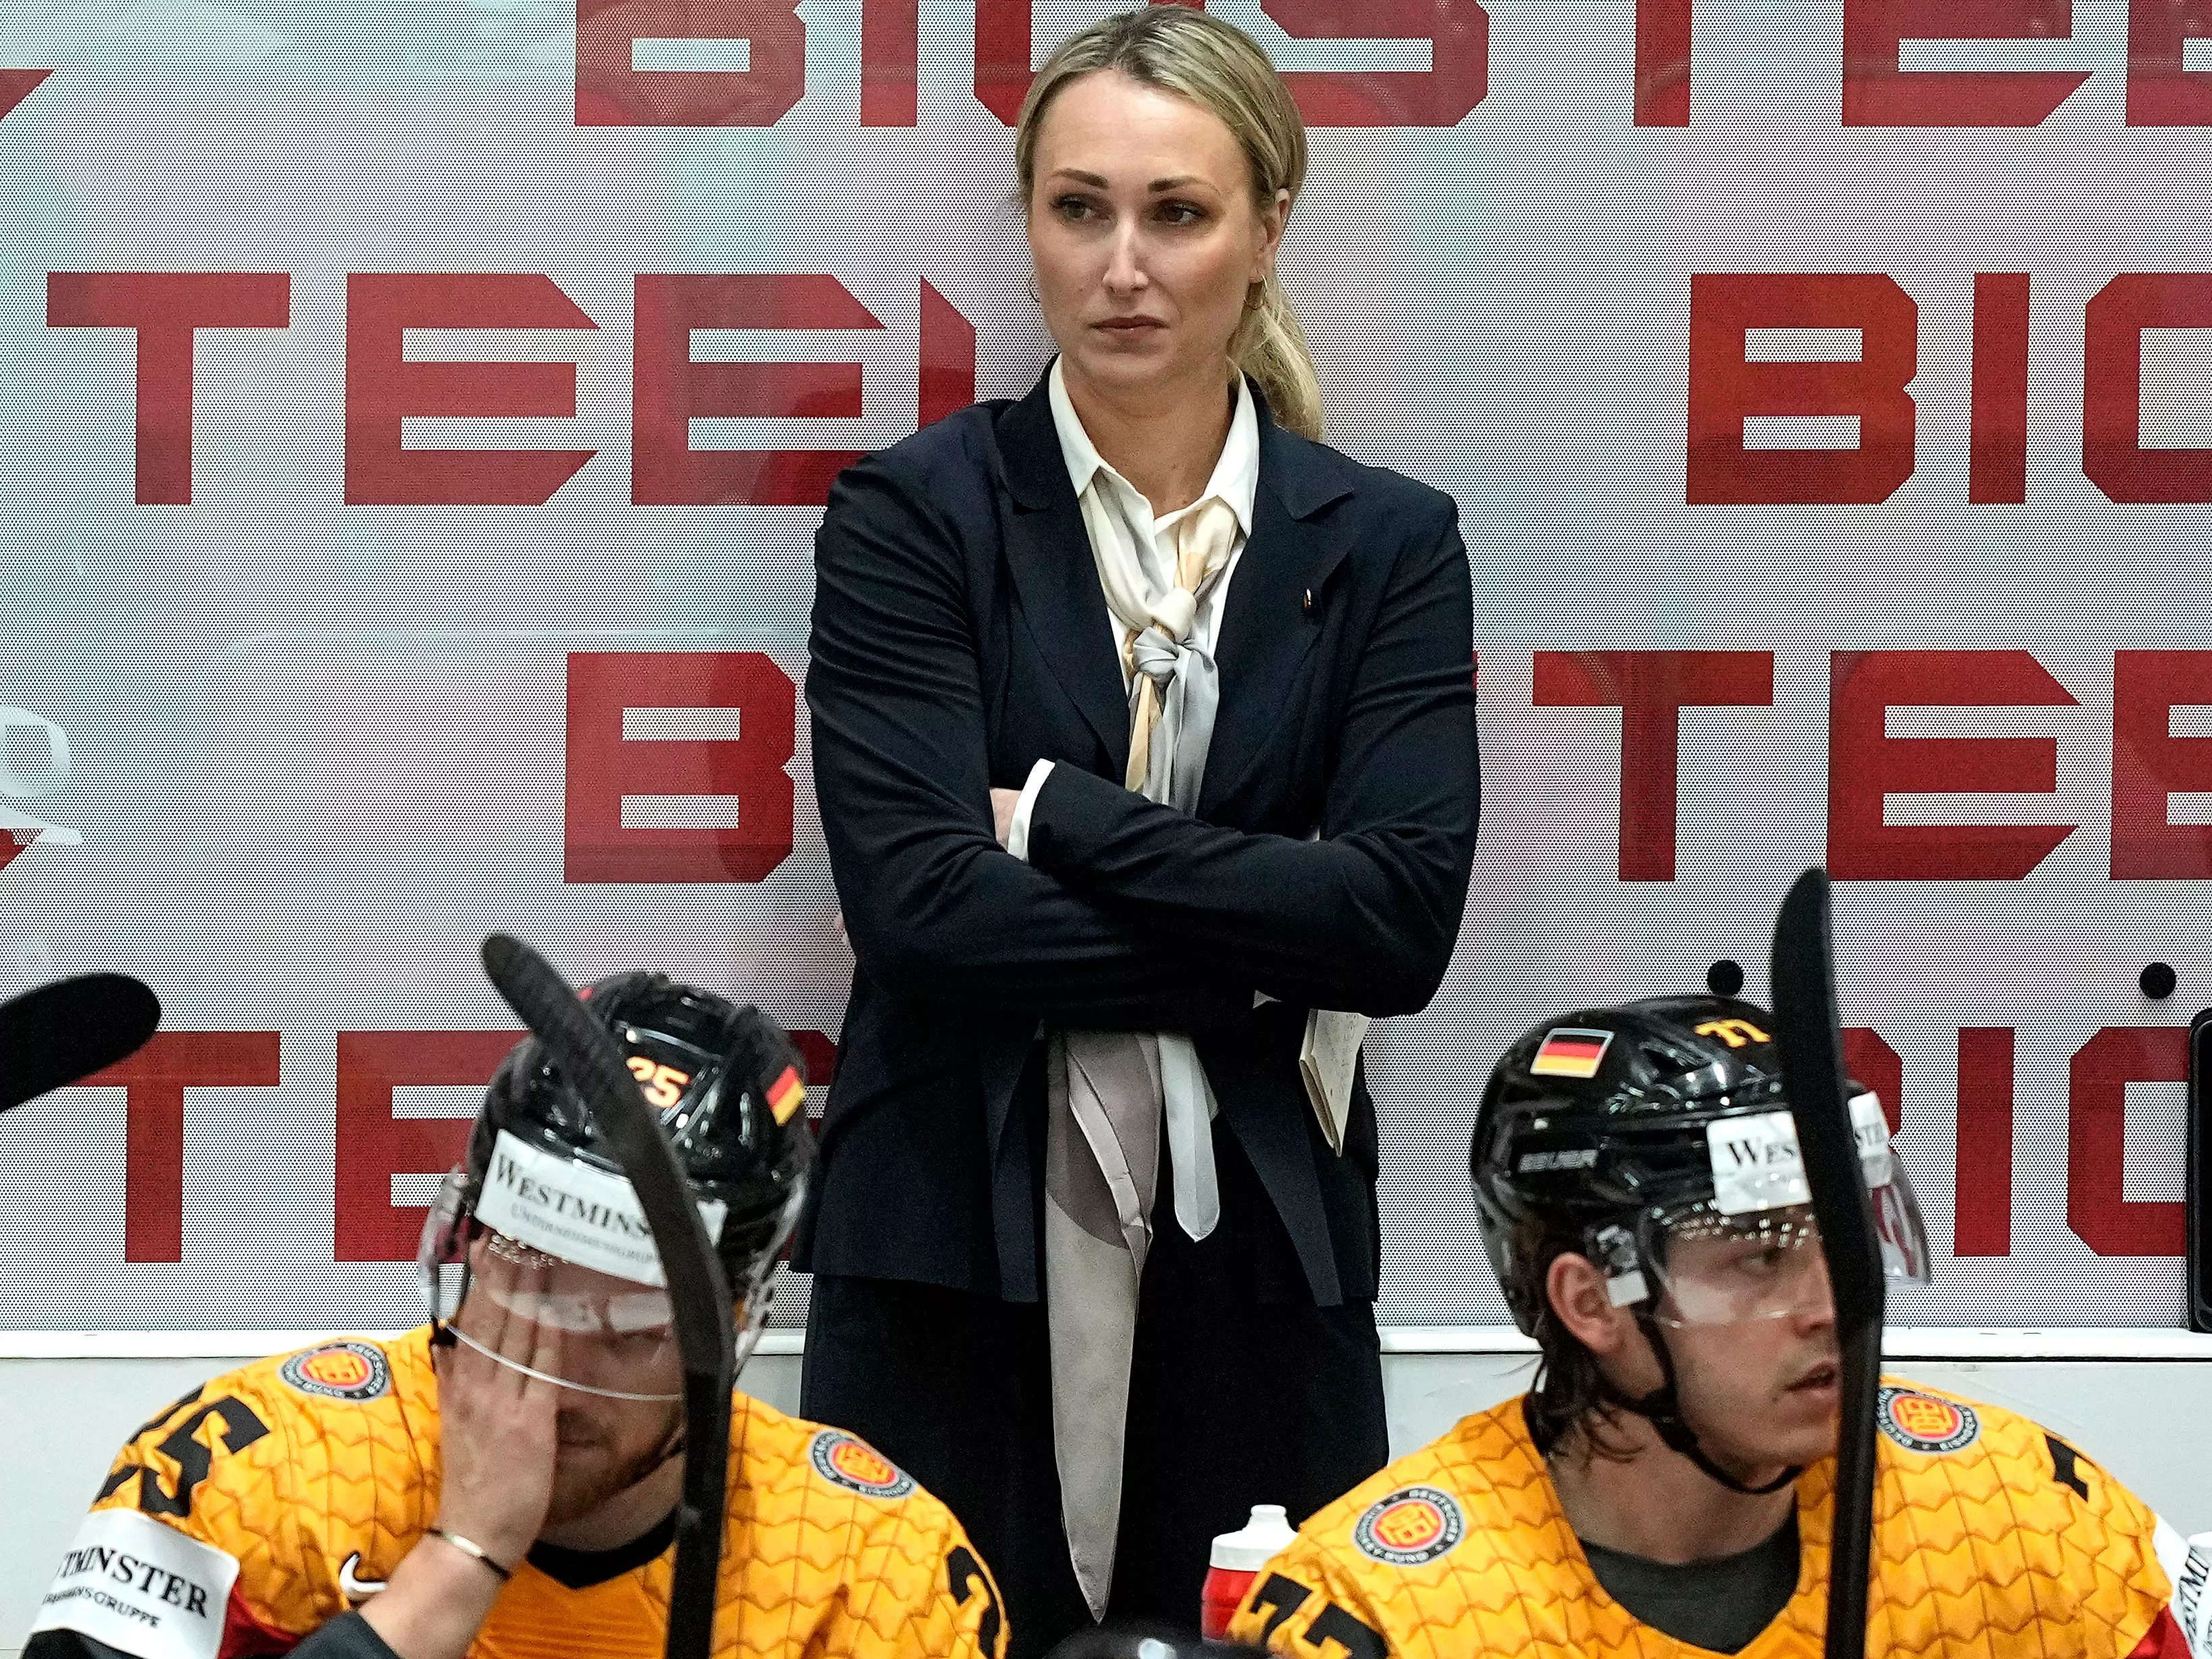 Ein Fernsehreporter fragte die bahnbrechende Trainerin des Team Deutschland, wie es sei, eine „schöne Frau“ in einem Eishockeyteam „voller schöner Männer“ zu sein.